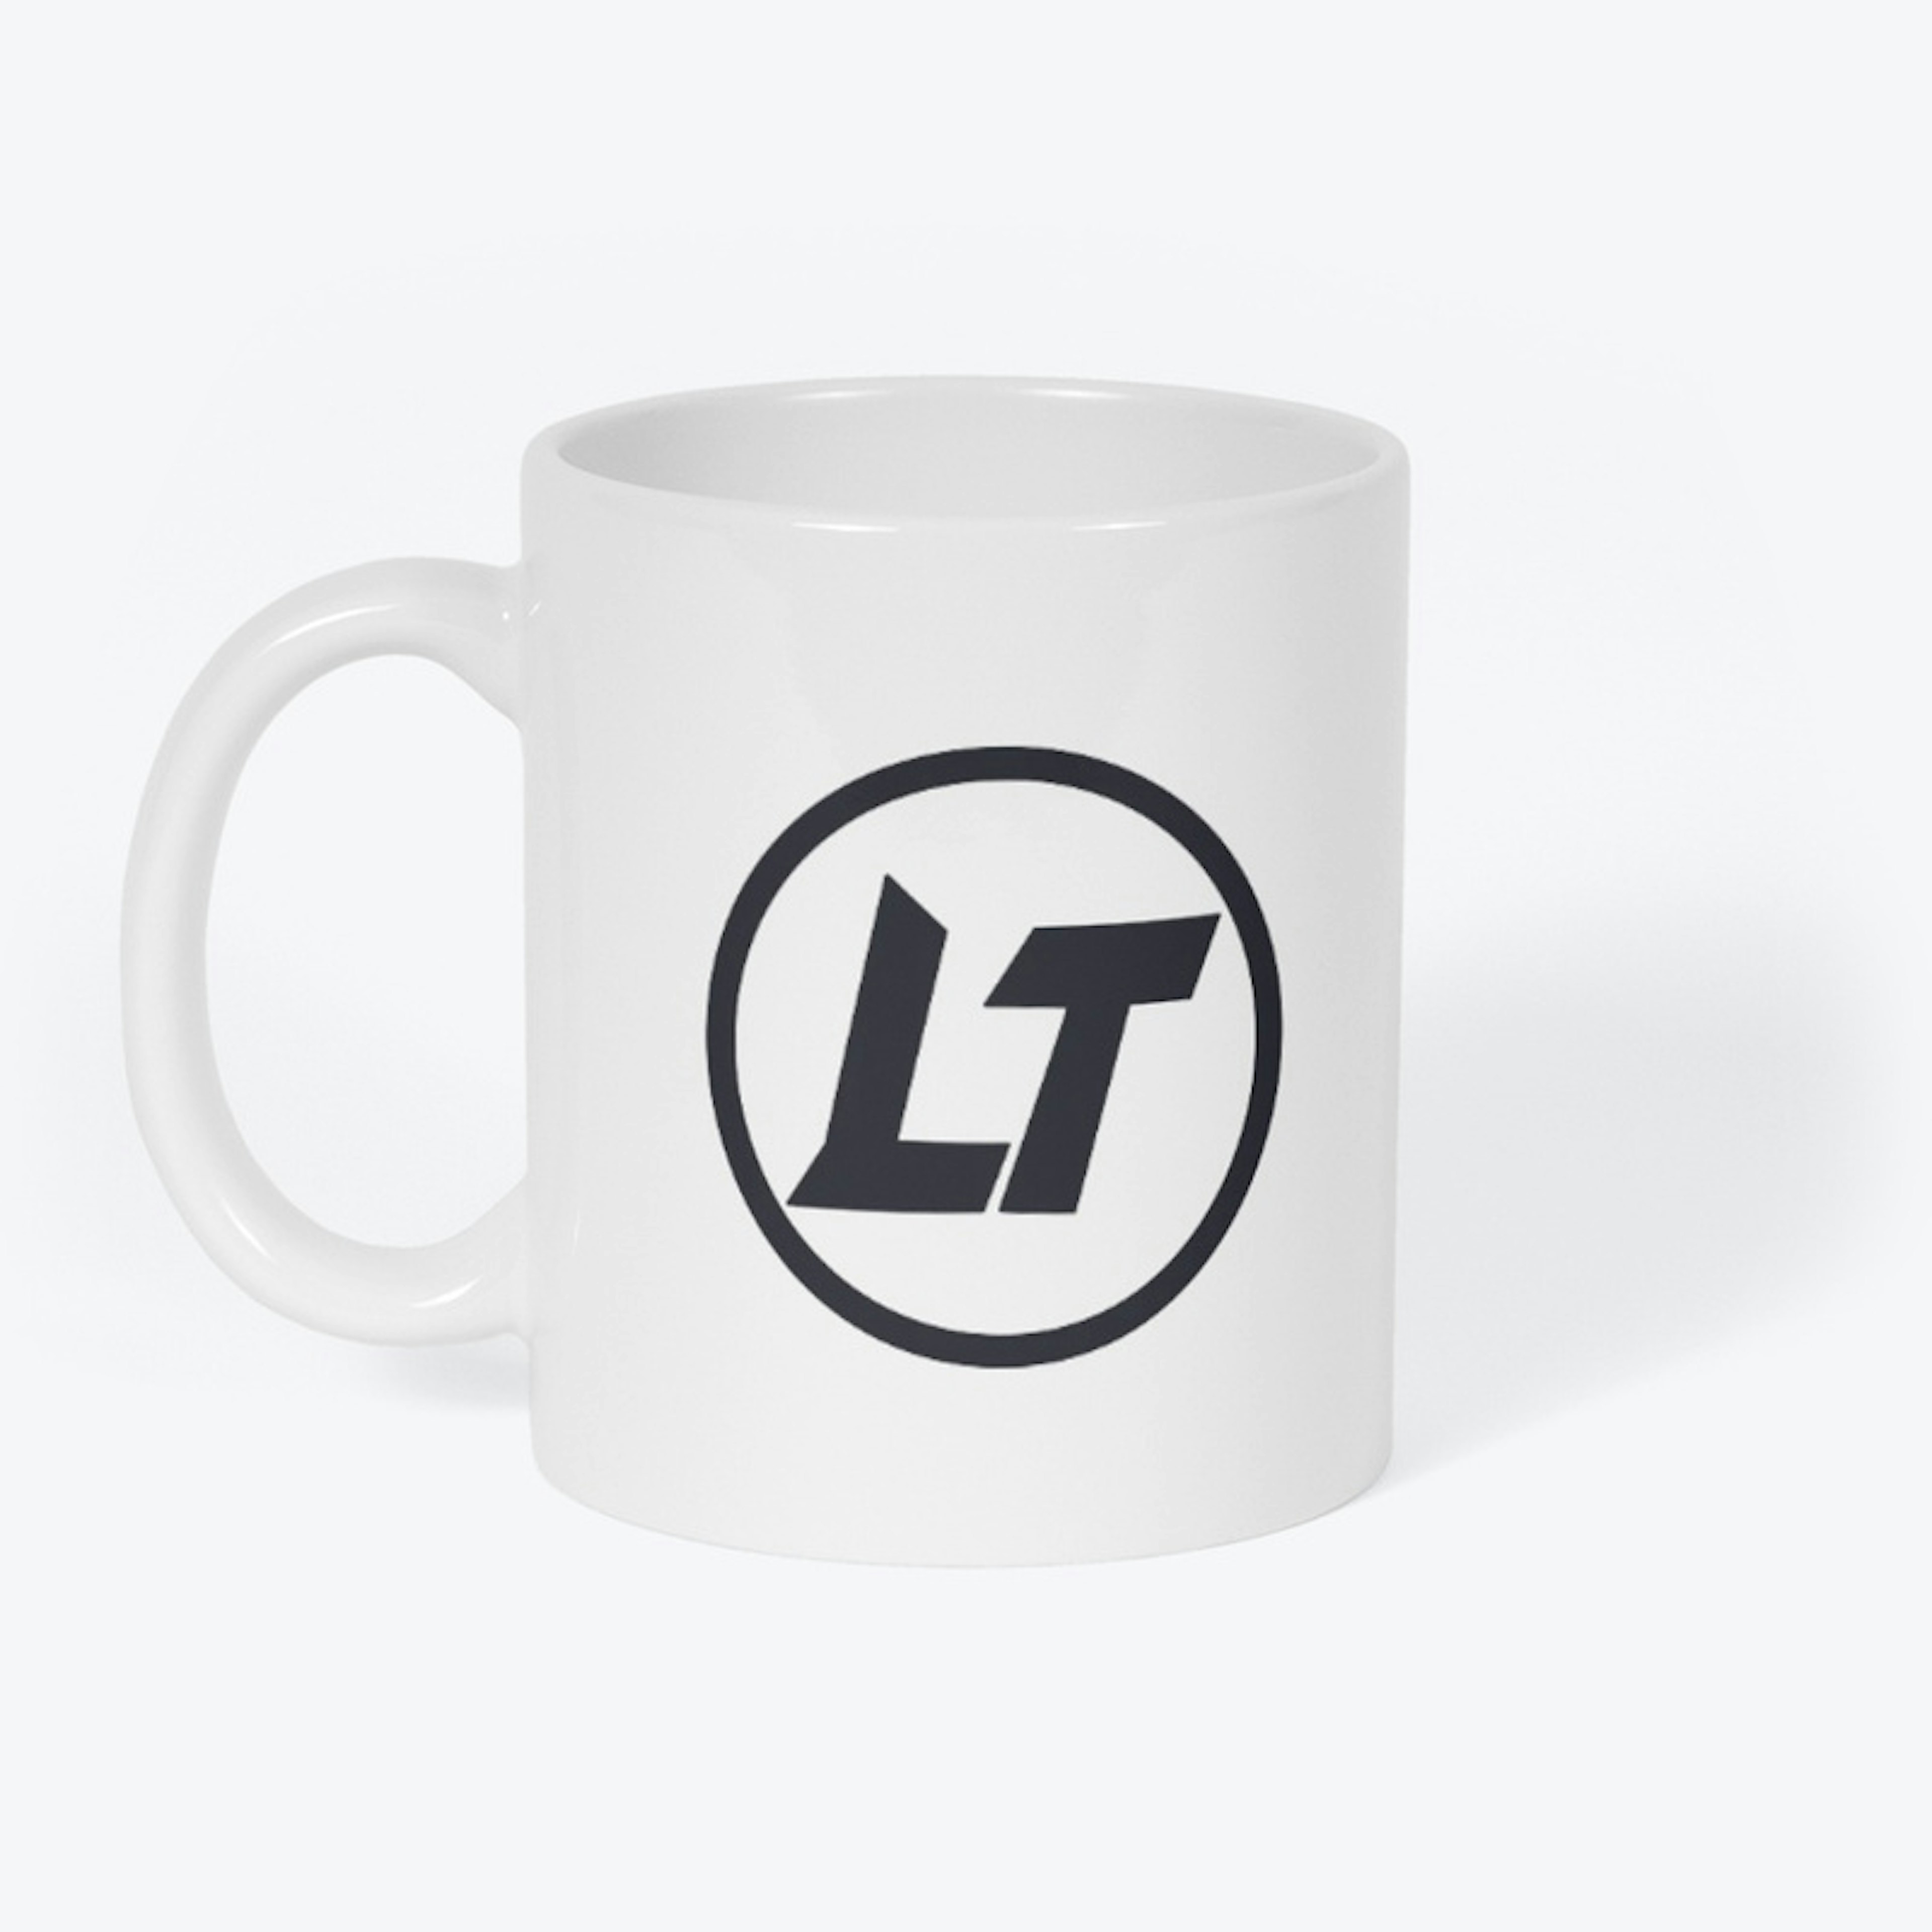 LT Mug